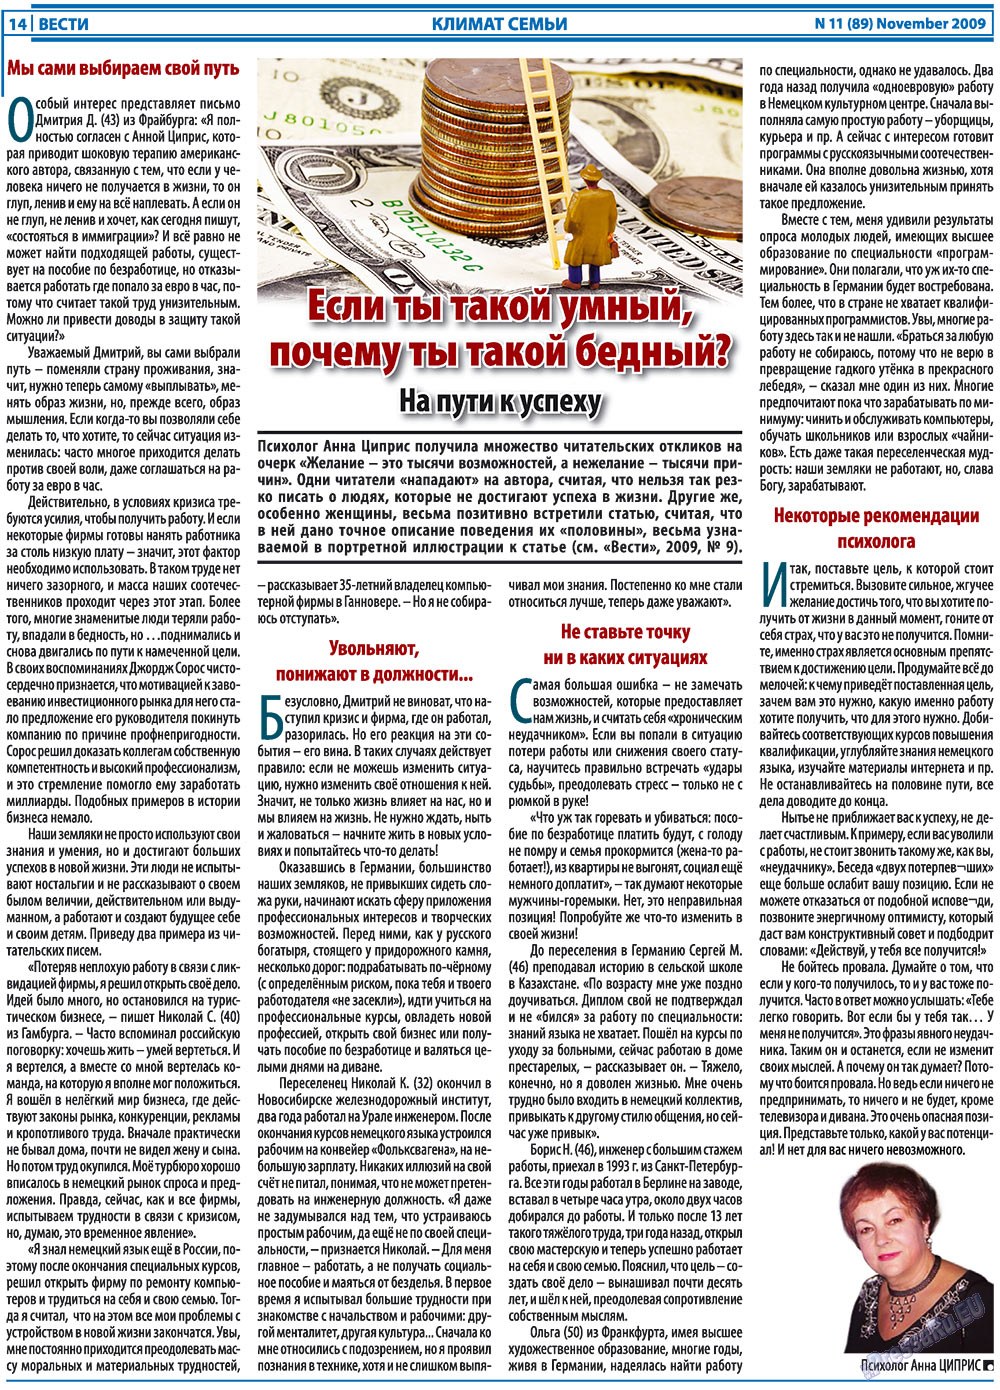 Вести, газета. 2009 №11 стр.14